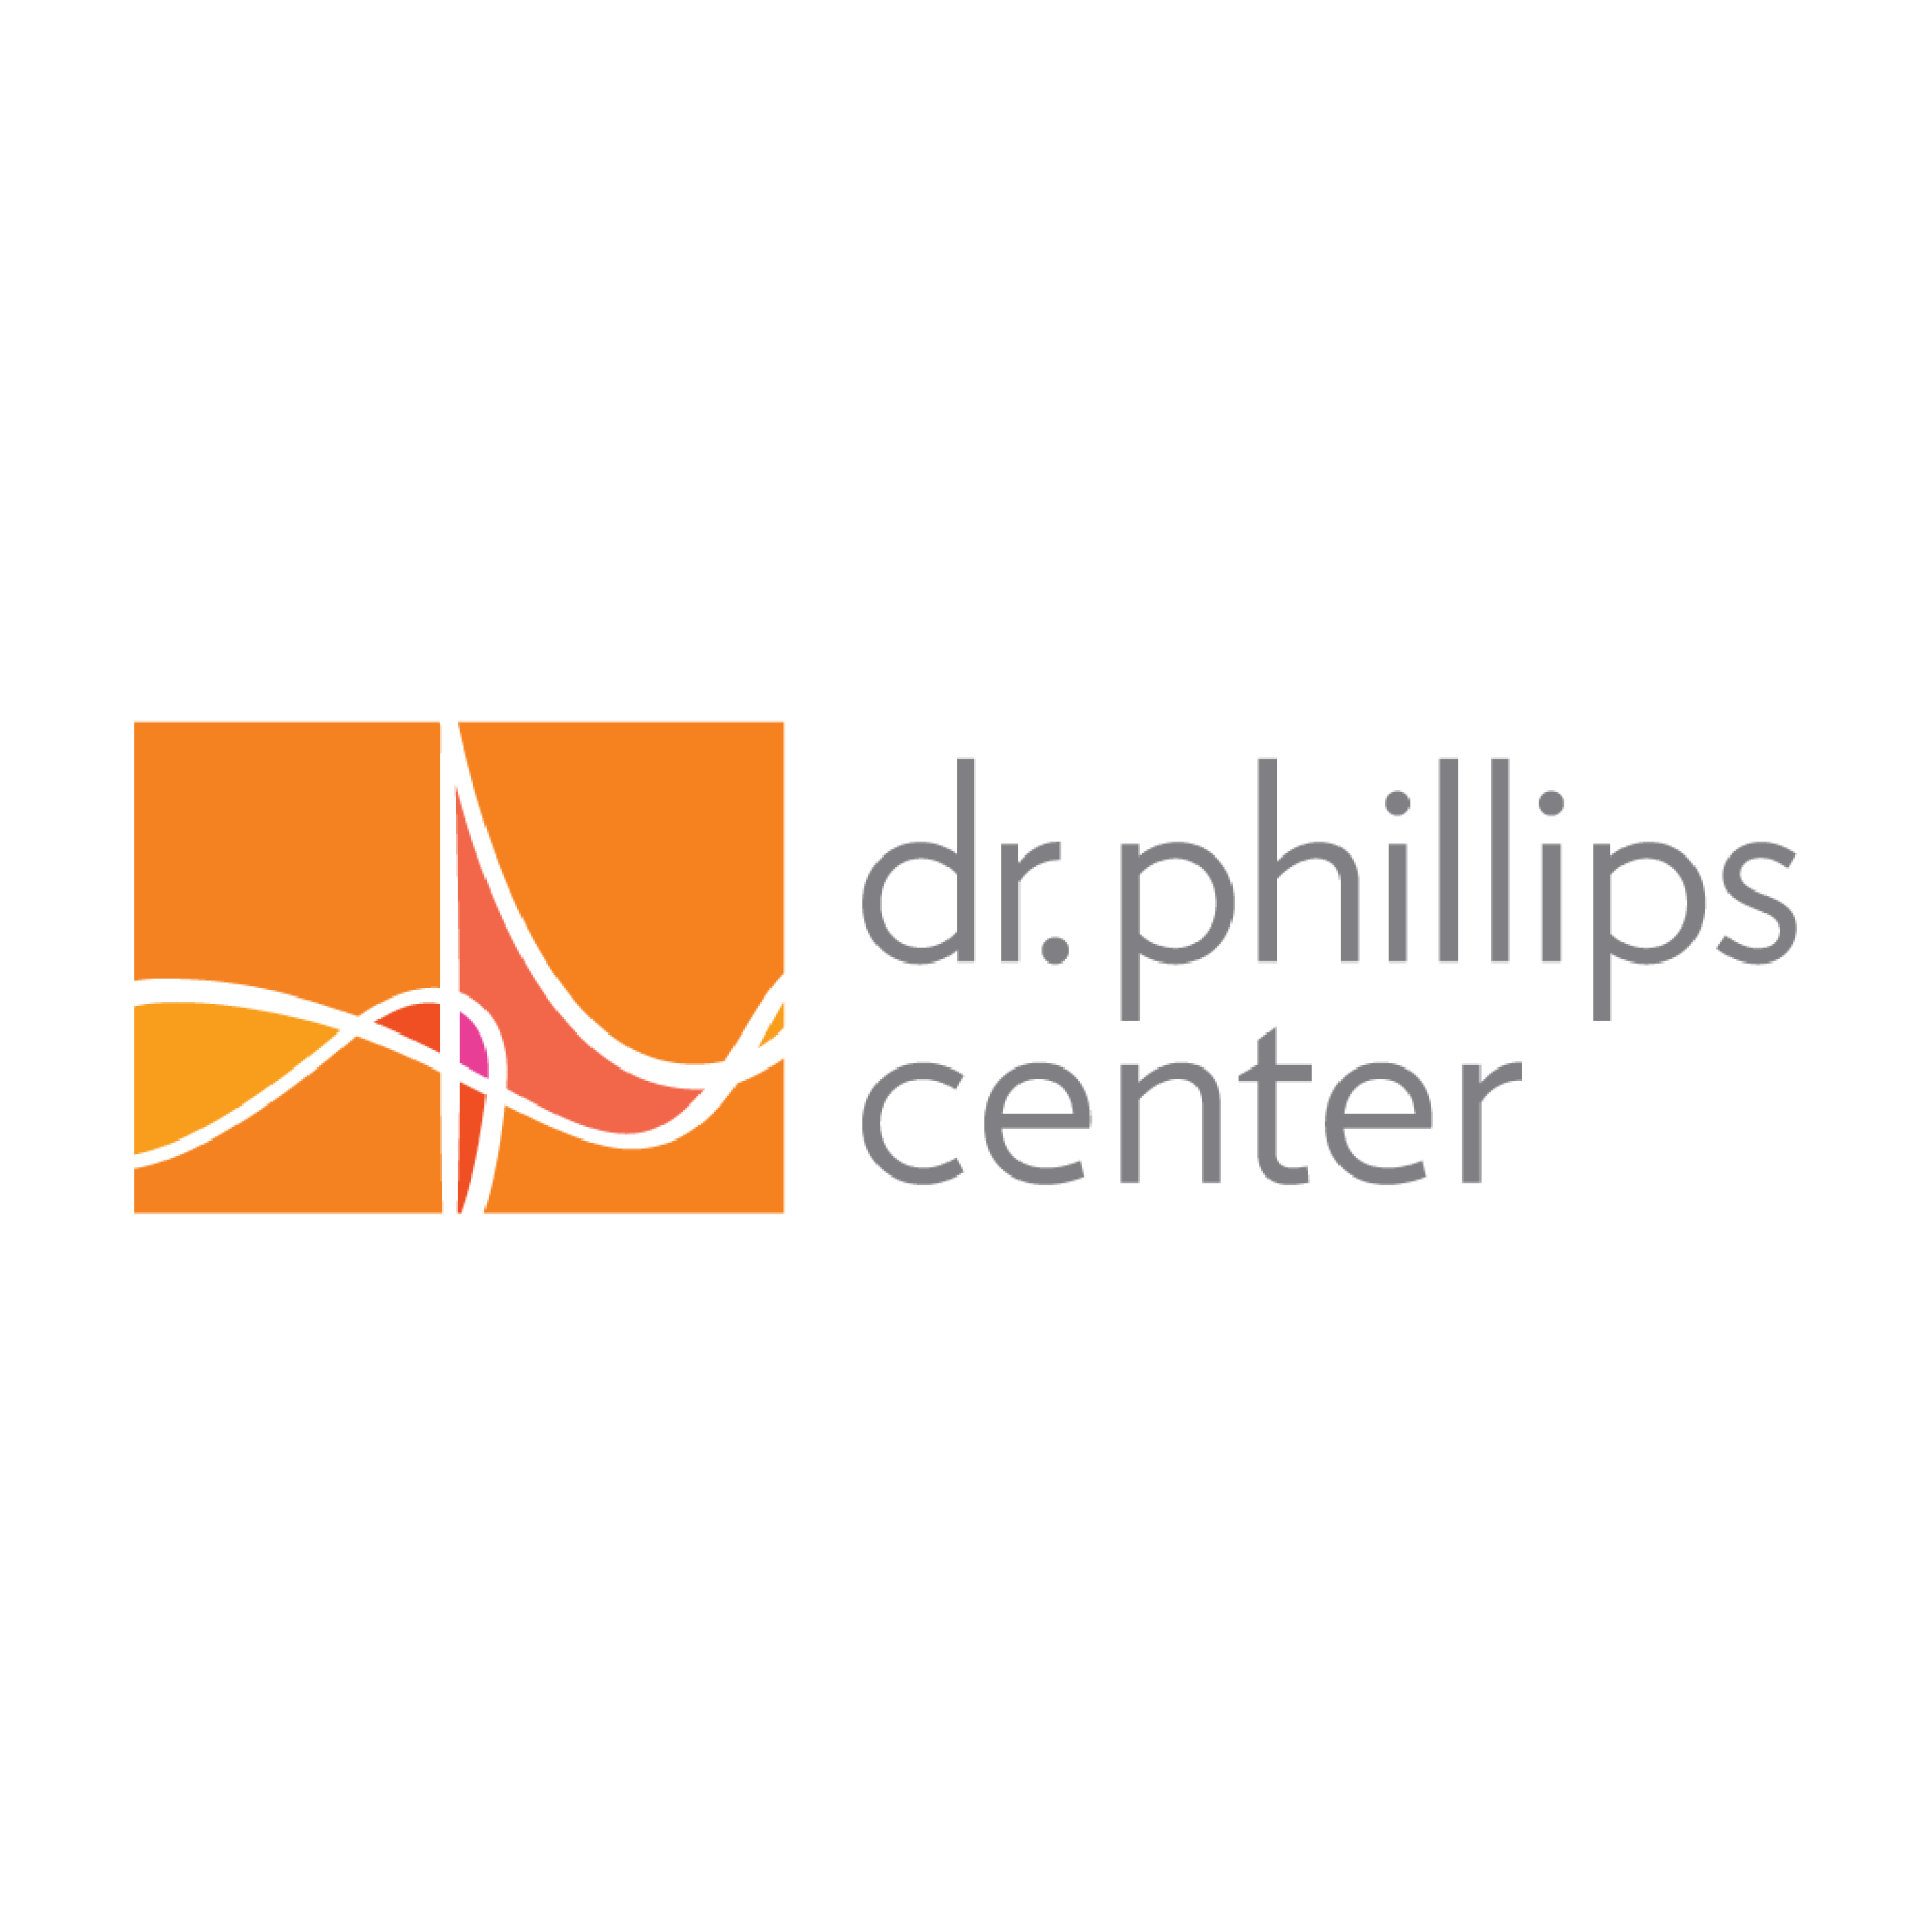 Dr. Phillips Center